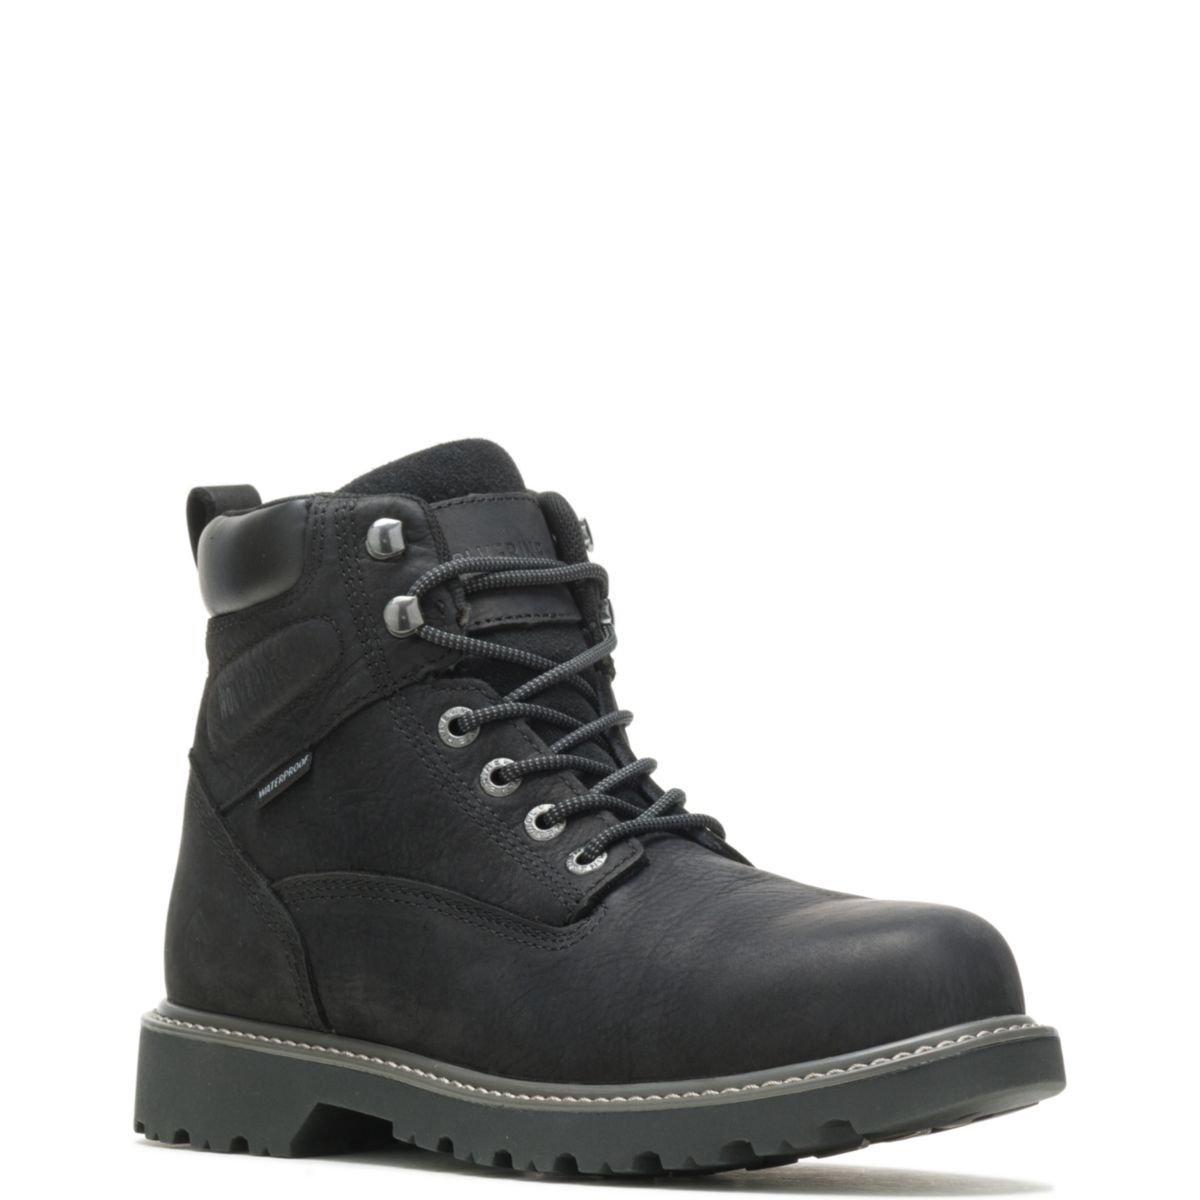 WOLVERINE Men's Floorhand 6 Waterproof Soft Toe Work Boot Black - W10691 BLACK - BLACK, 9-D